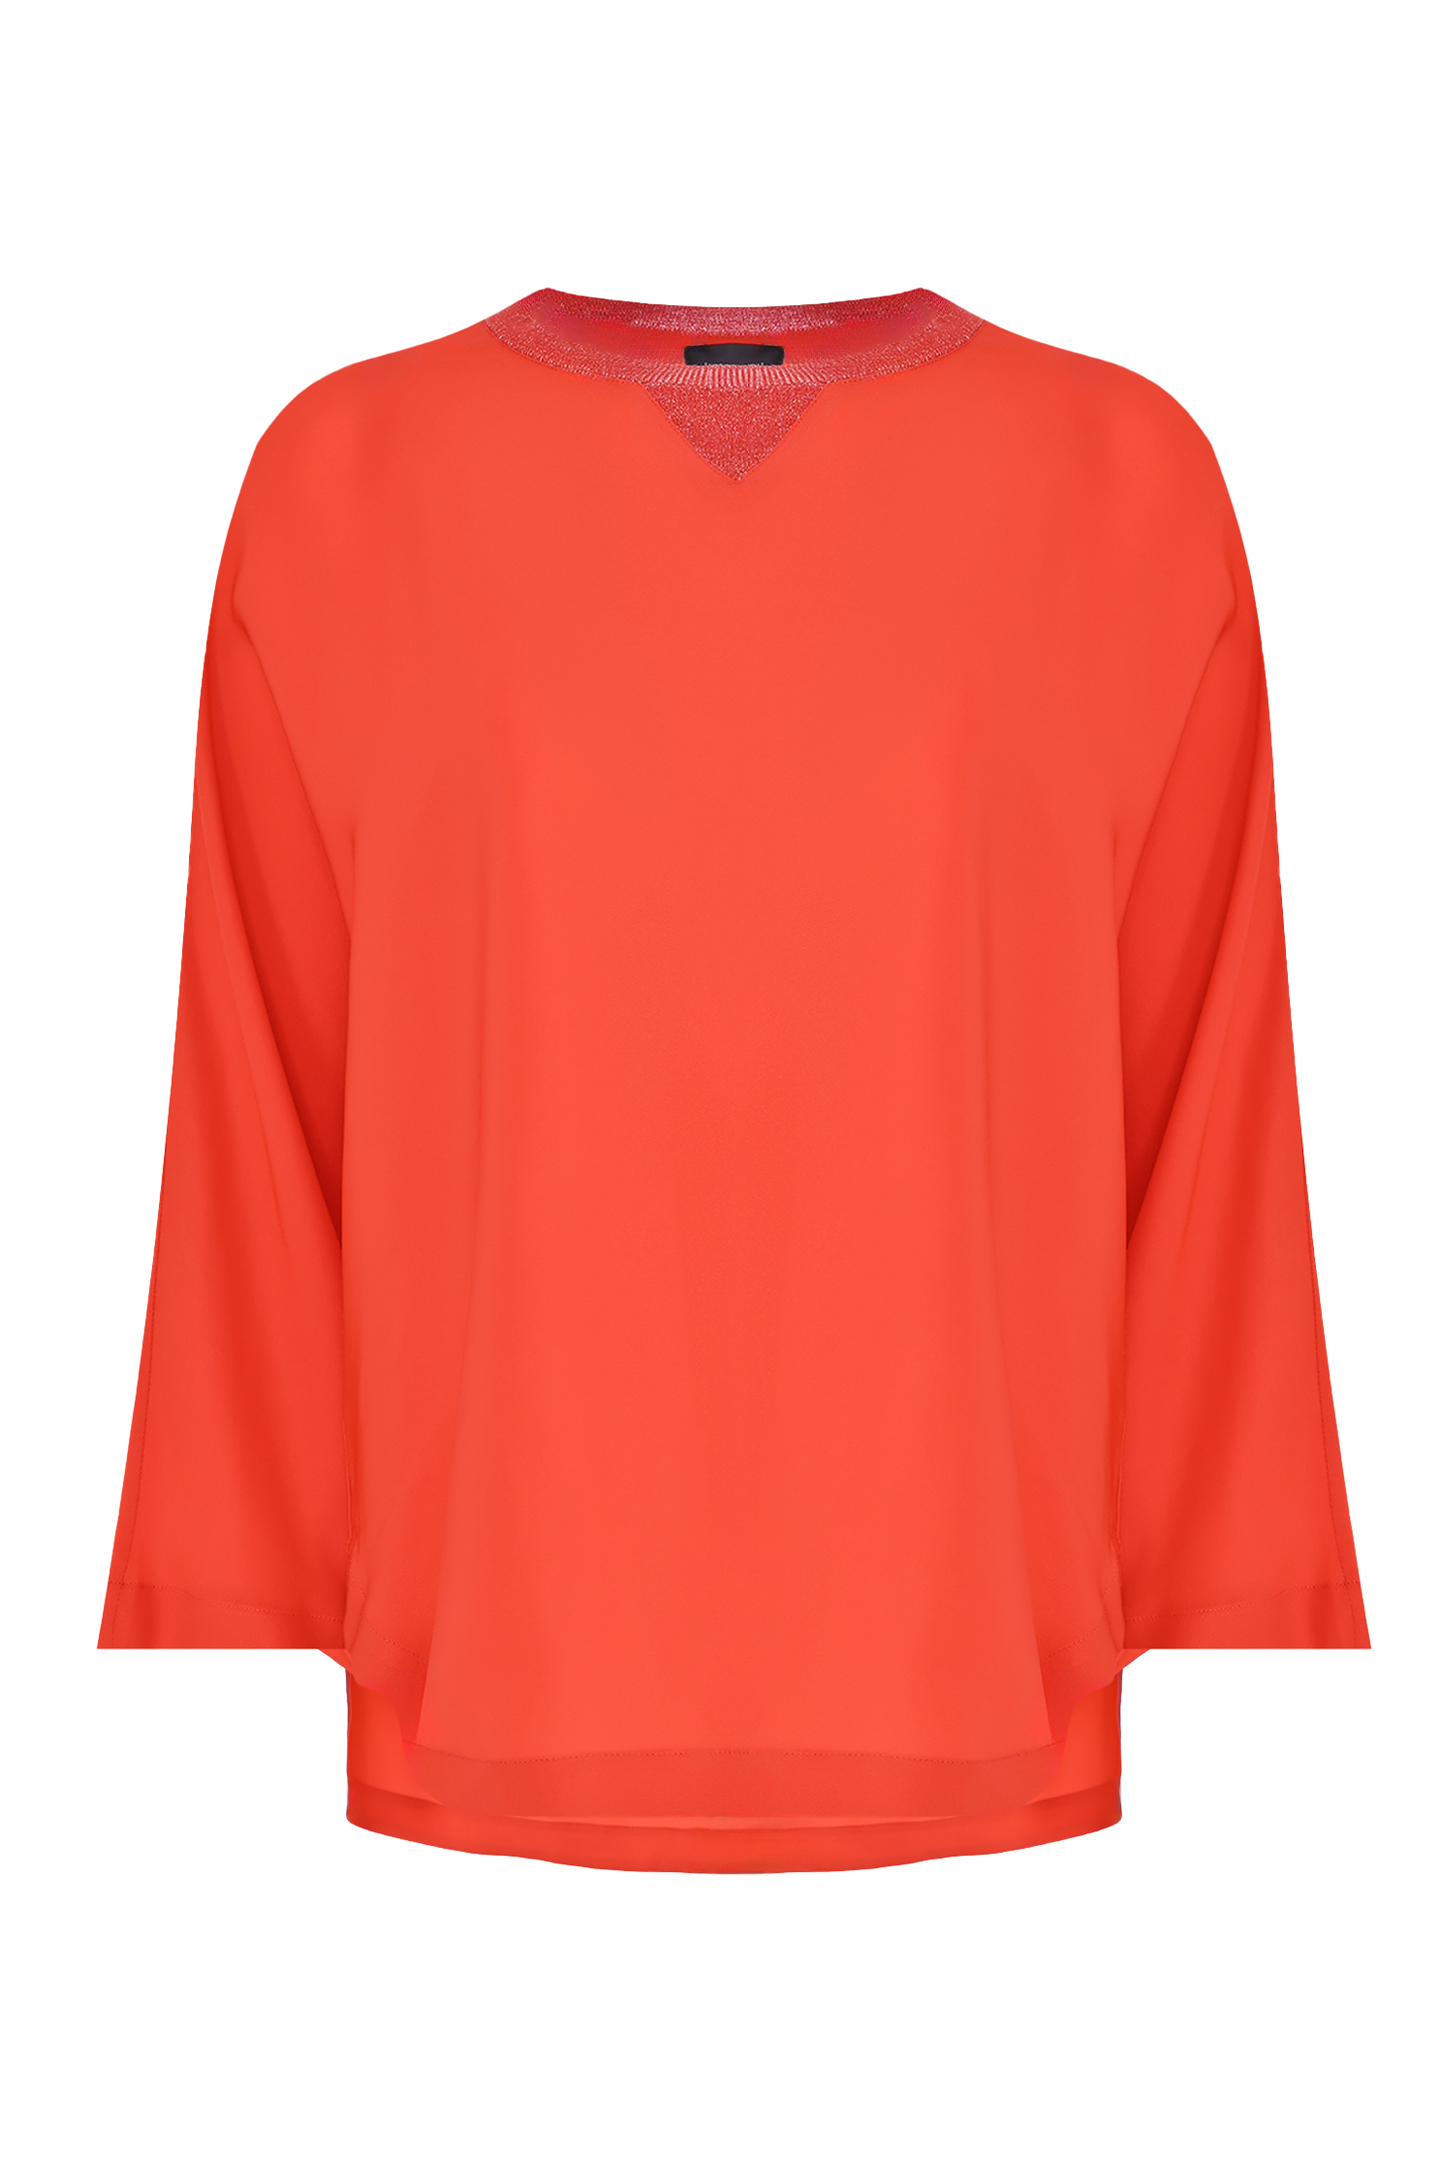 Блуза LORENA ANTONIAZZI P2461TS43A, цвет: Красный, Женский